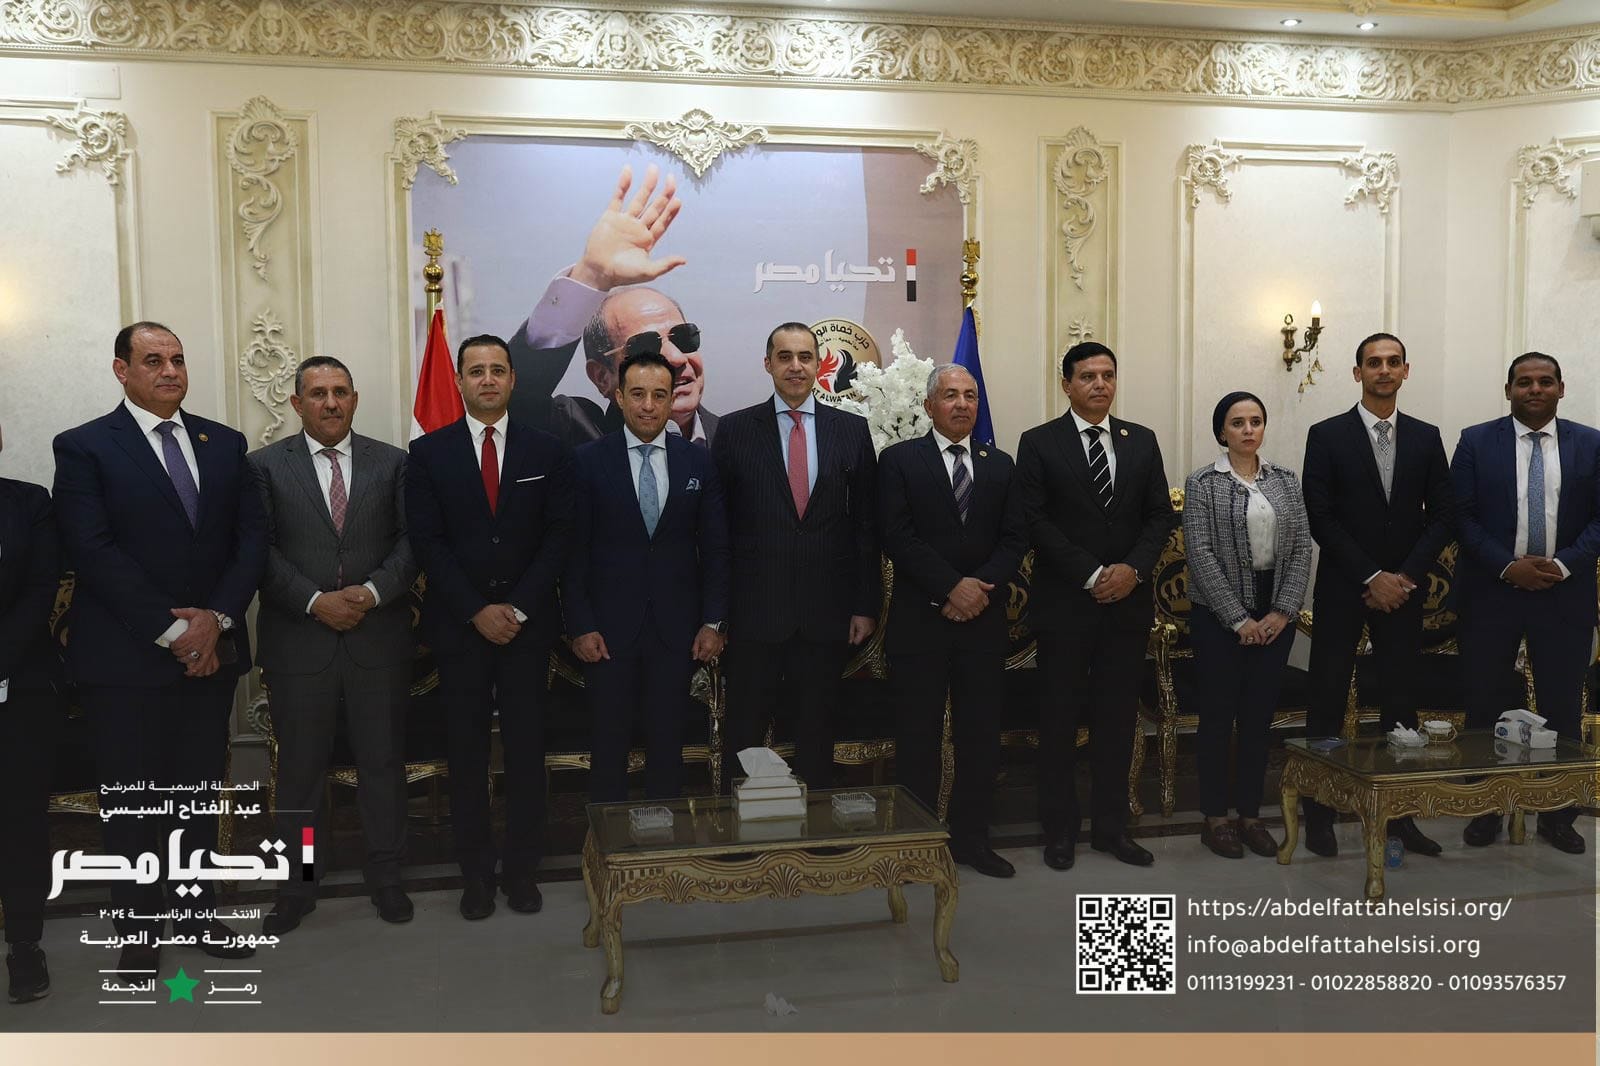 حملة المرشح الرئاسي عبد الفتاح السيسي تشارك في مؤتمر جماهيري لحزب حماة وطن بالفيوم